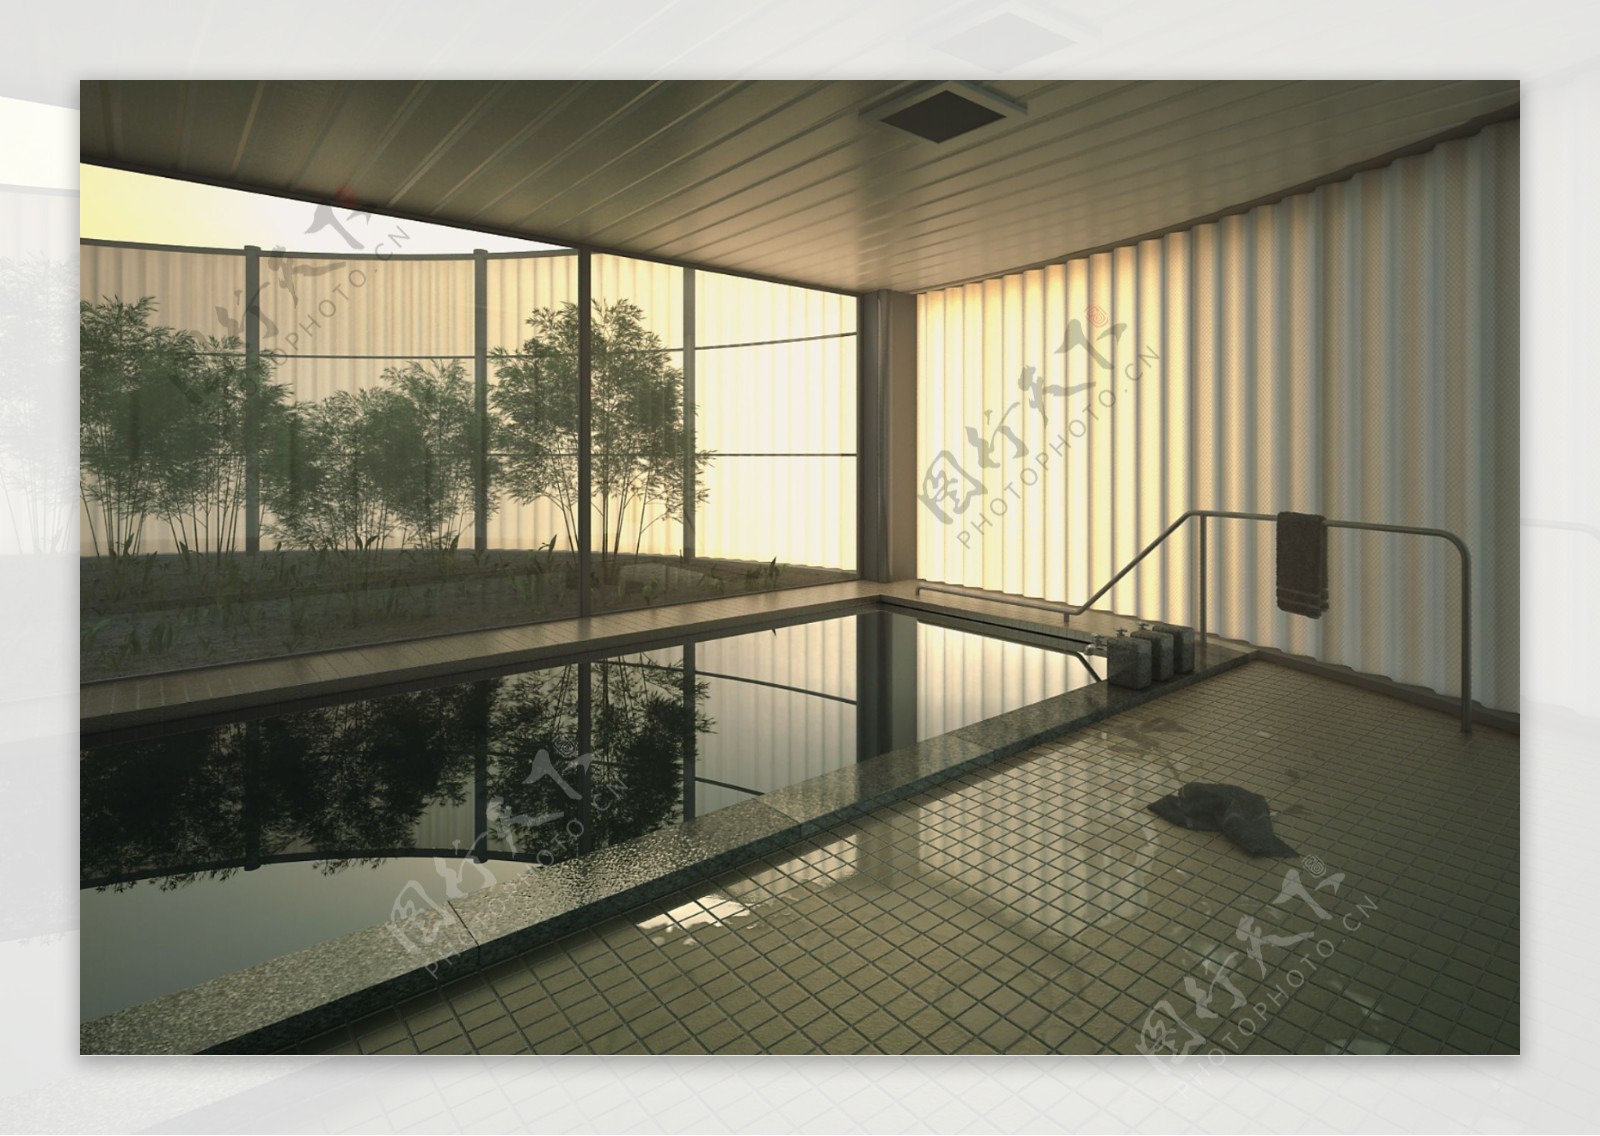 室内游泳池PSD室内设计